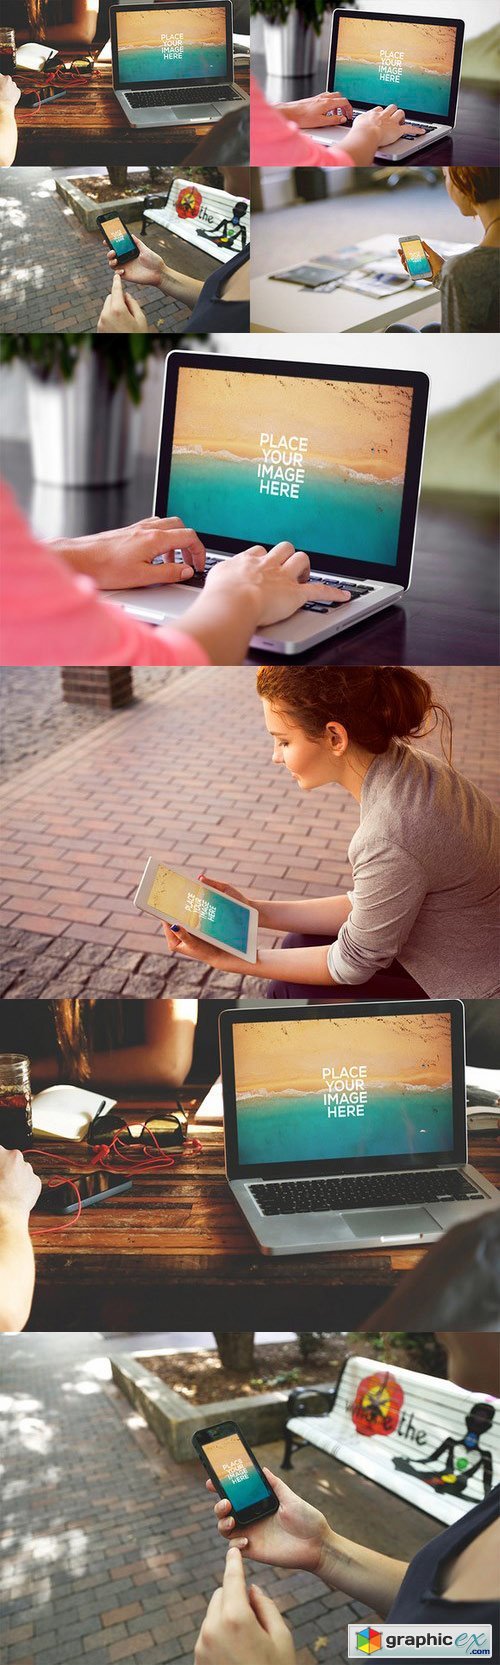 Macbook, iPhone, iPad - Mockups